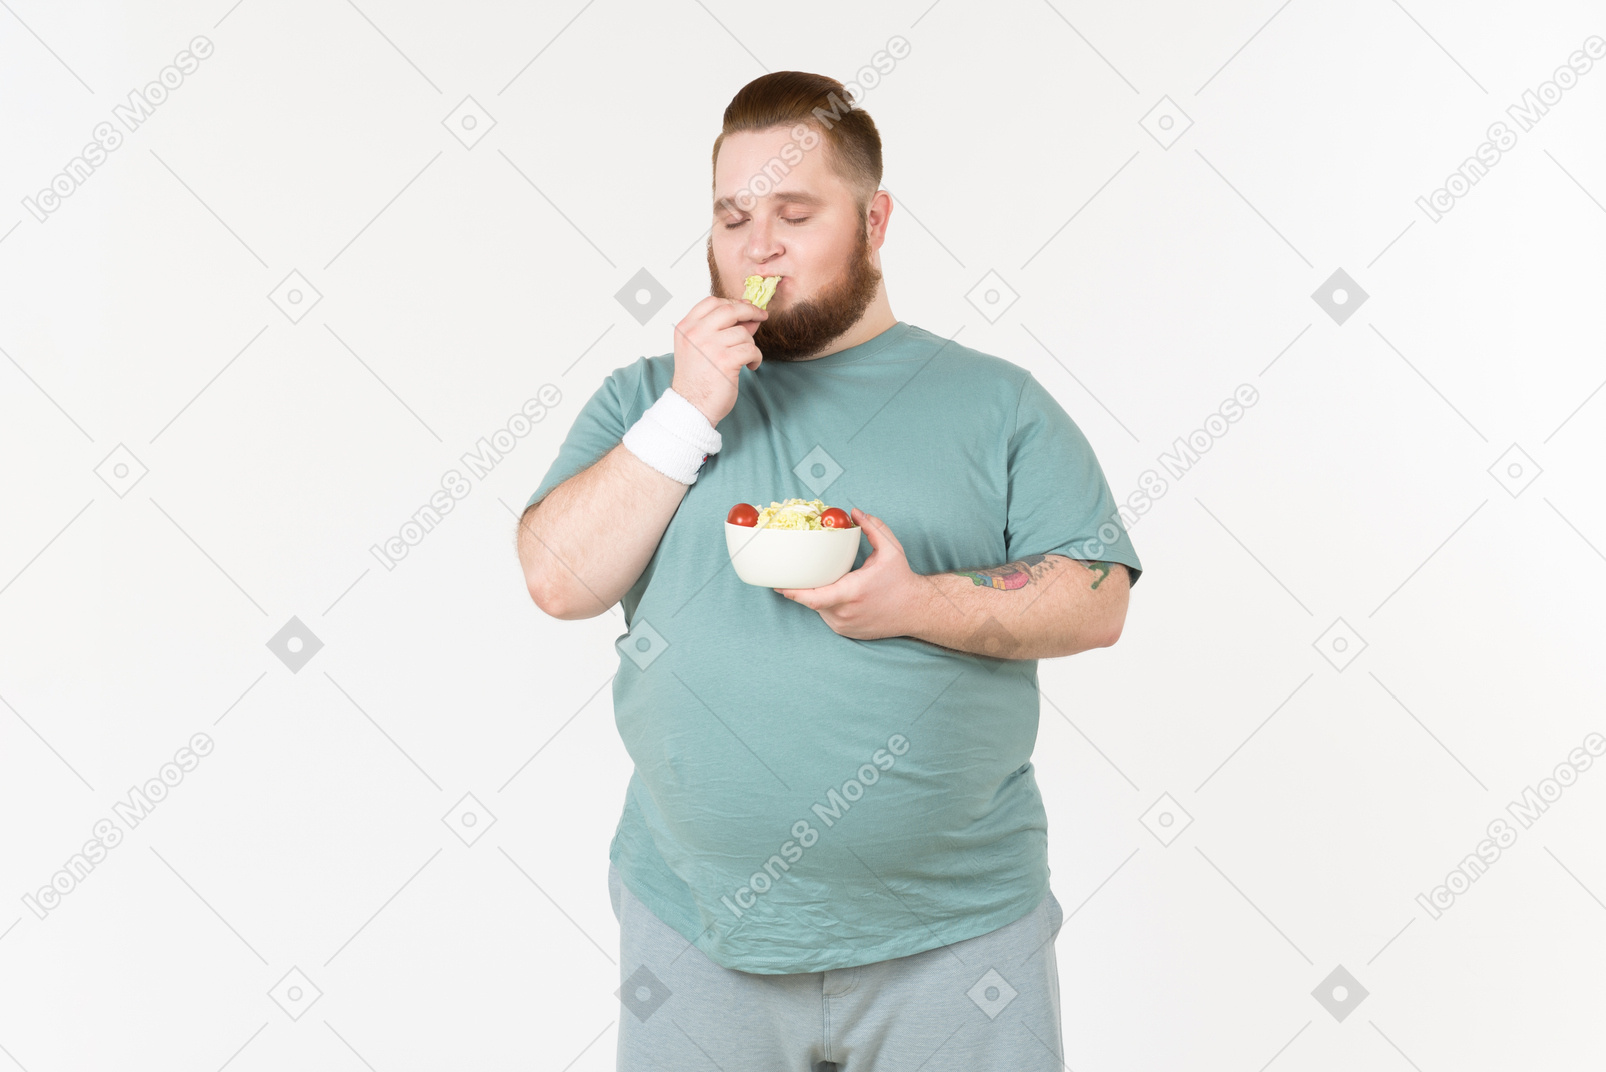 Ein großer typ in sportkleidung, der salatblatt isst, das er vom teller geholt hat